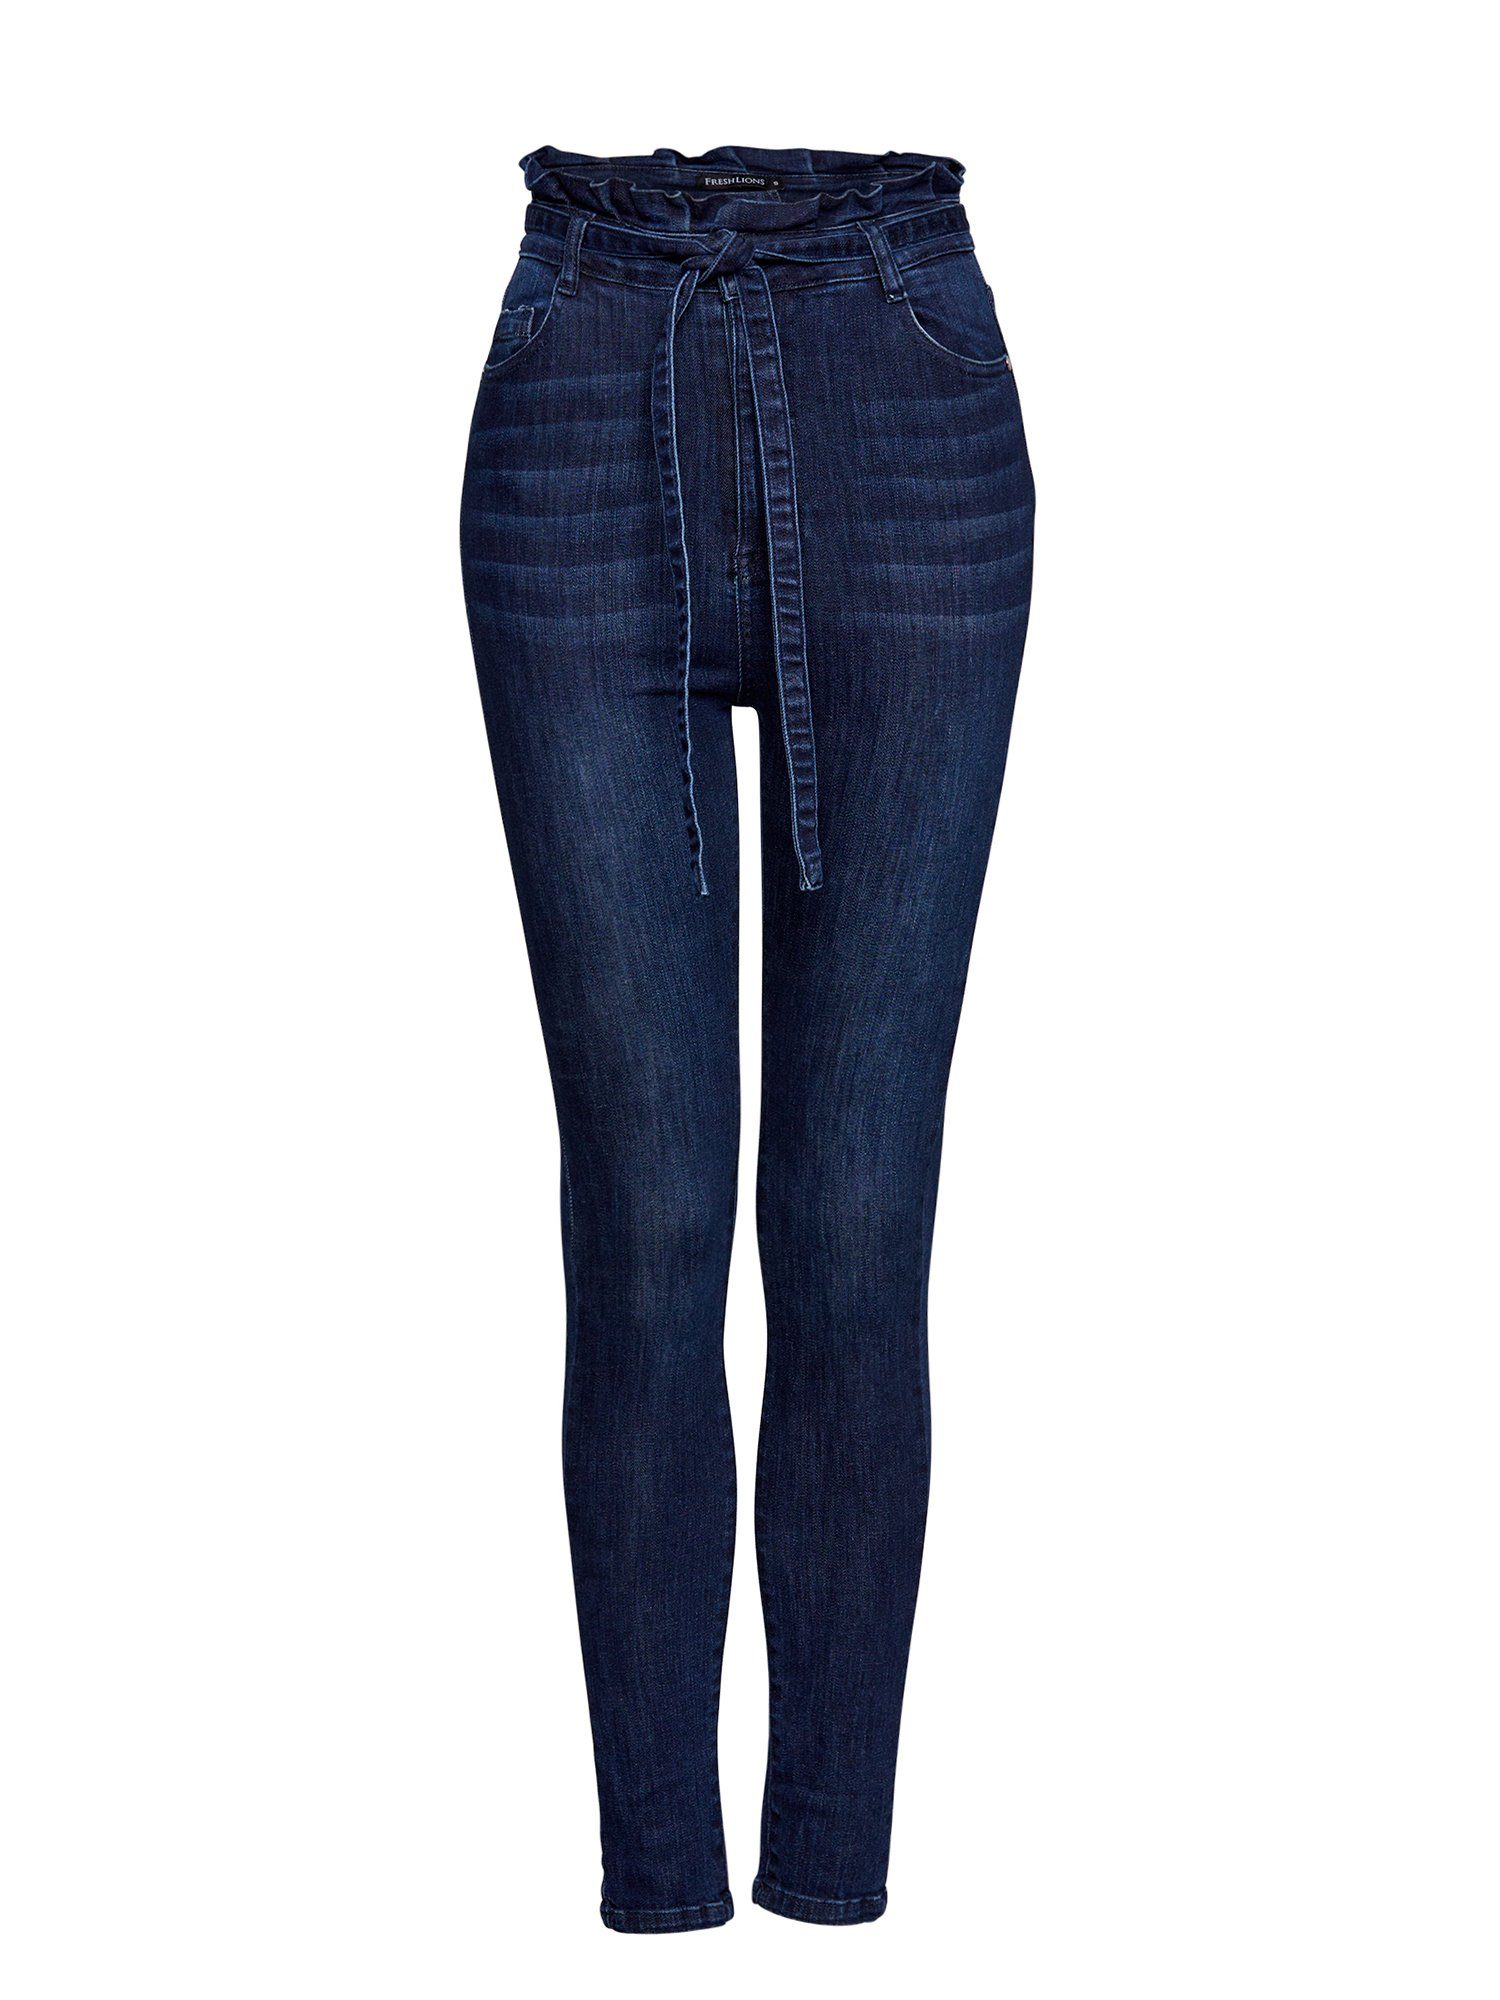 mit High-waist-Jeans Freshlions Bindegurt Jeans blau